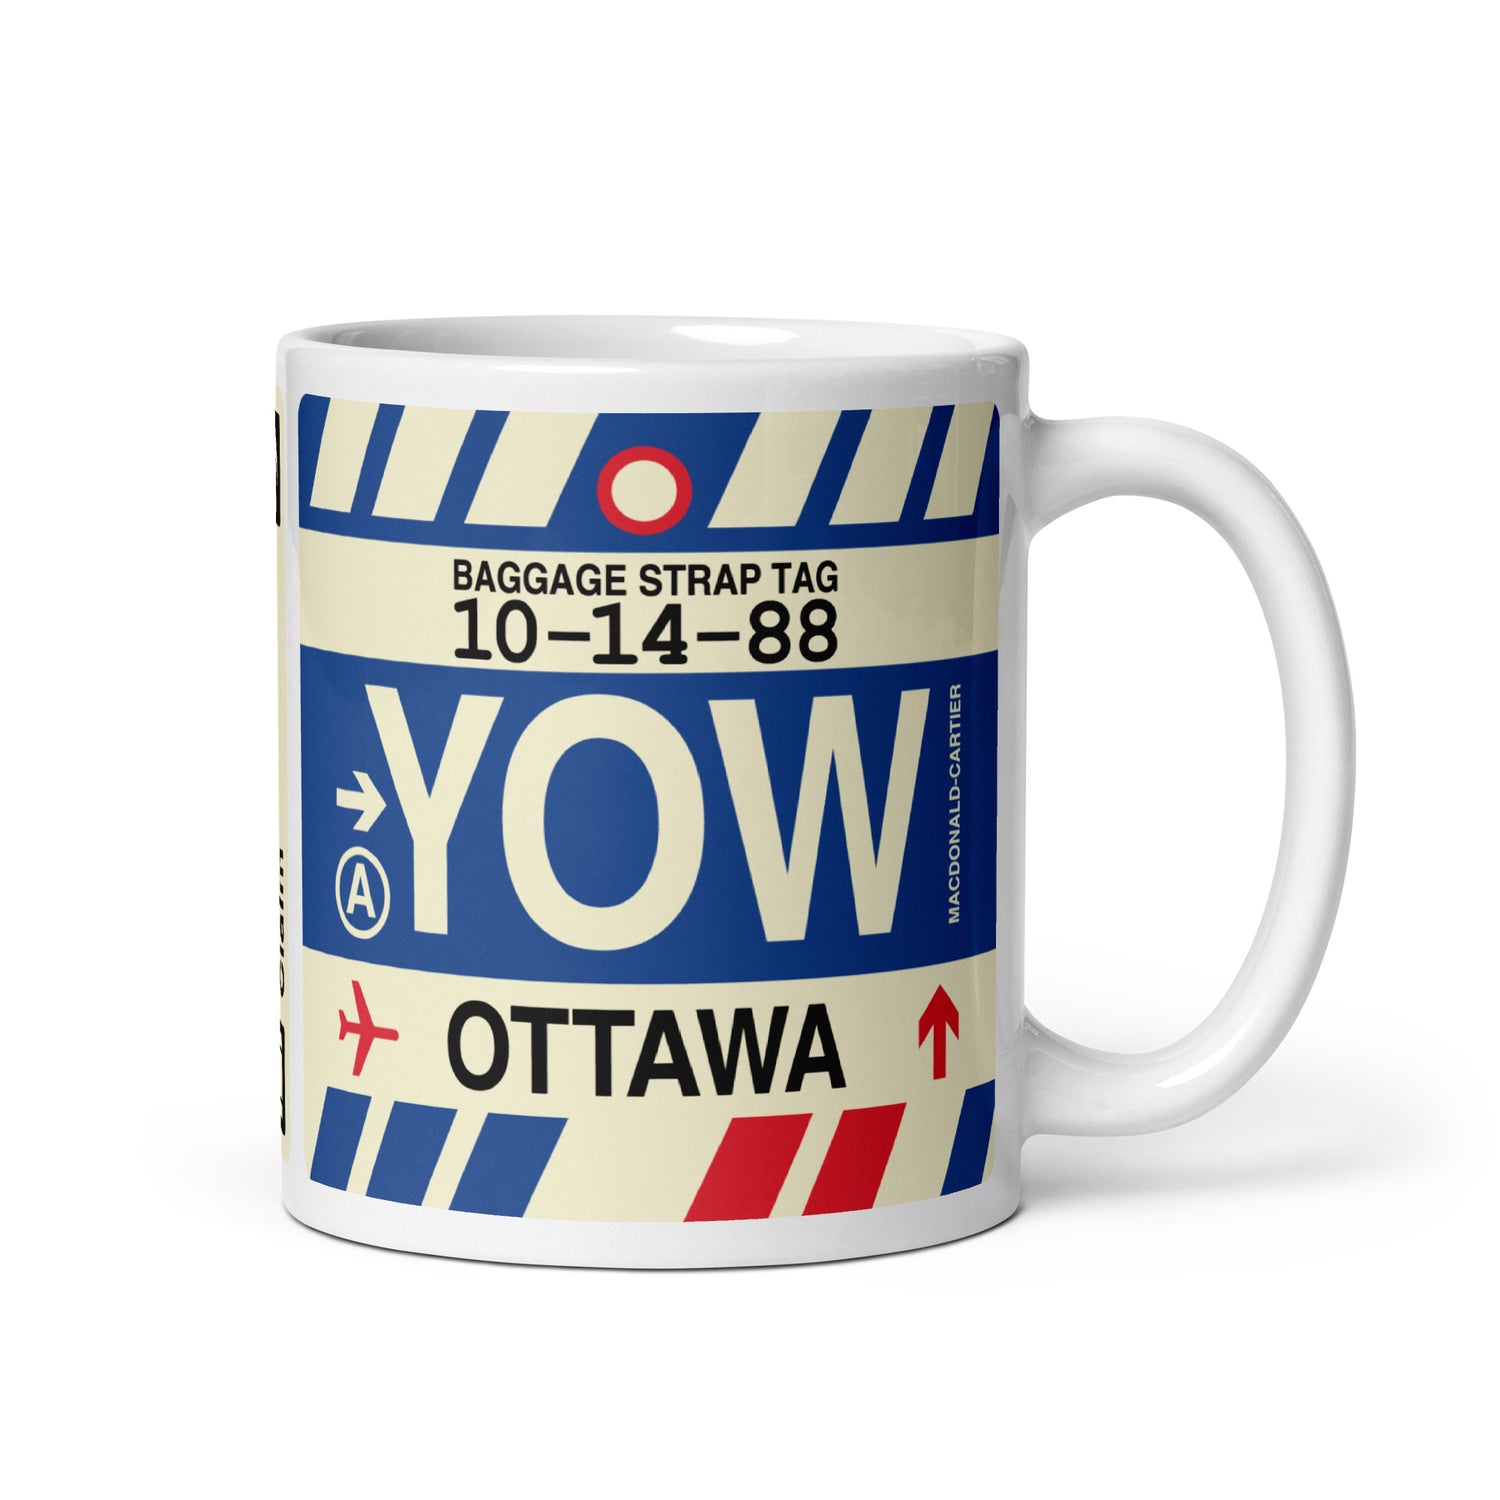 Ottawa Ontario Coffee Mugs and Water Bottles • YOW Airport Code